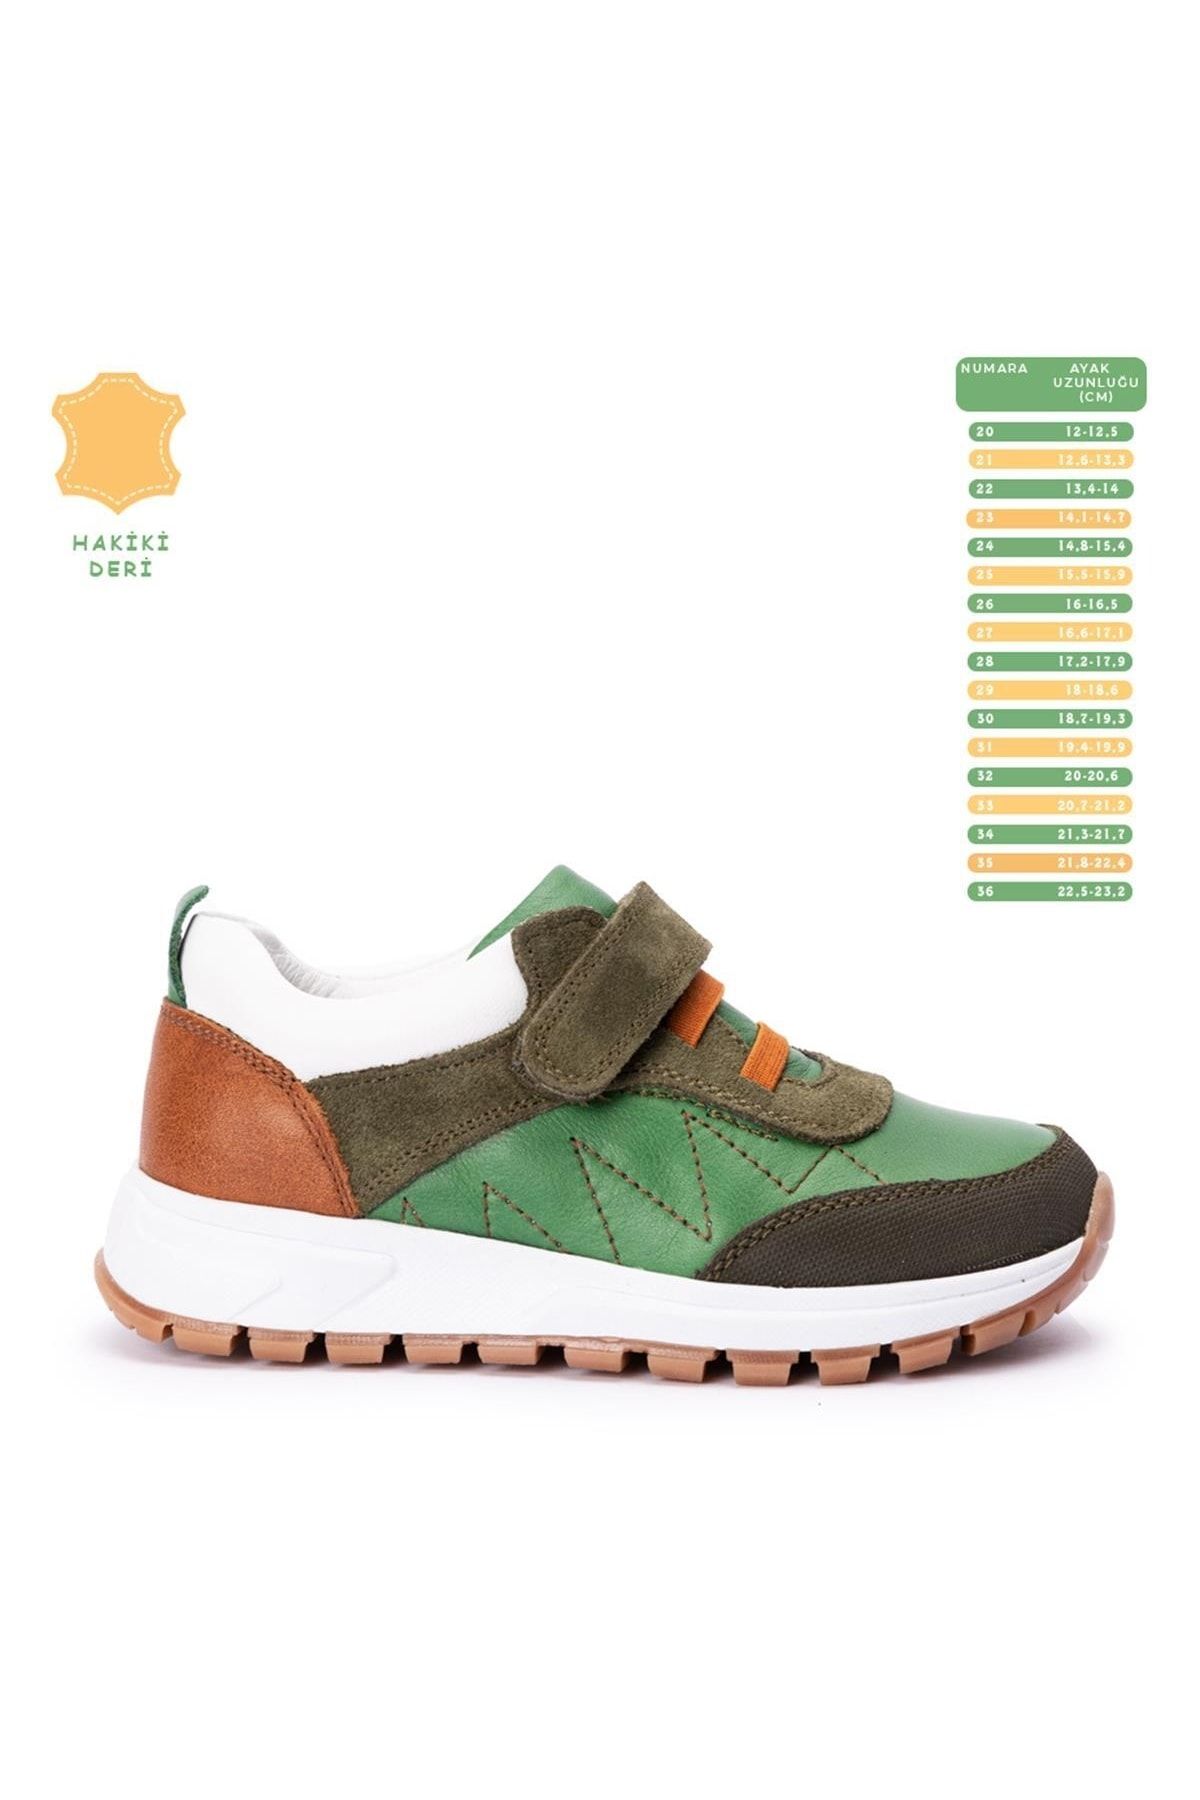 Kidata design Zigzig Yeşil Kahverengi Hakiki Deri Ortopedik Erkek Çocuk Ayakkabı